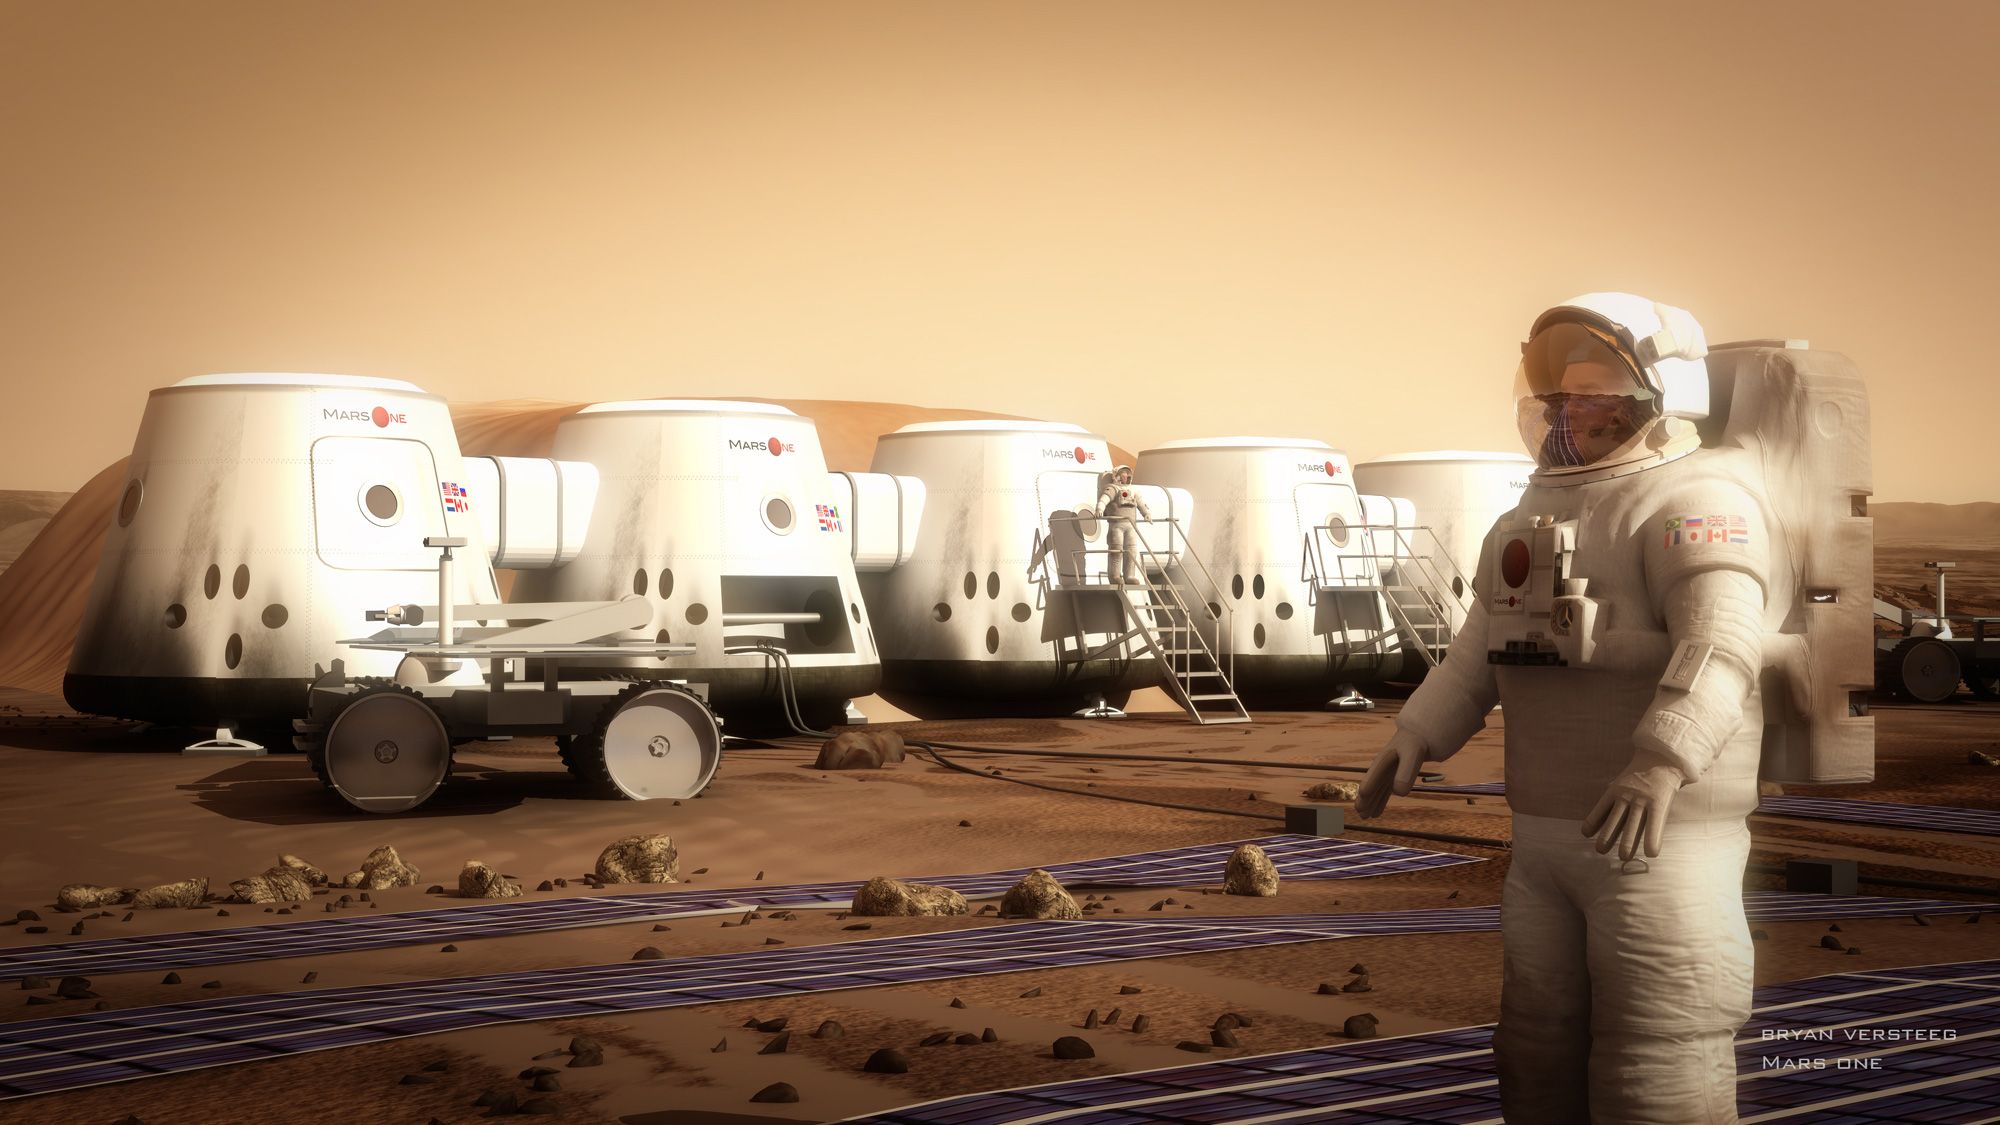 Dự án Mars One: Vụ lừa đảo lớn nhất trong lịch sử hiện đại? - Ảnh 1.